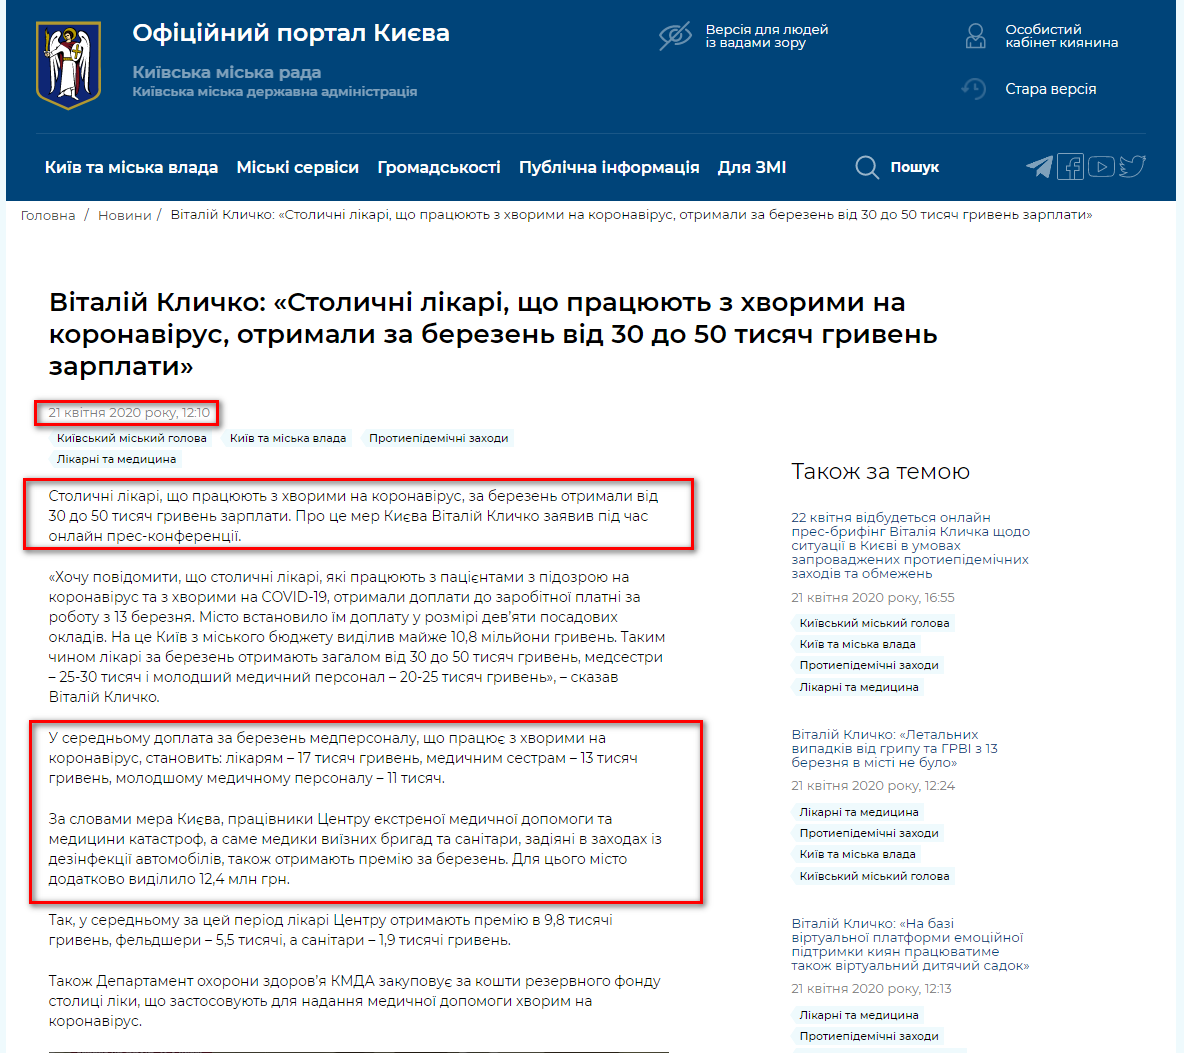 https://kyivcity.gov.ua/news/vitaliy_klichko_stolichni_likari_scho_pratsyuyut_z_khvorimi_na_koronavirus_otrimali_za_berezen_vid_30_do_50_tisyach_griven_zarplati/